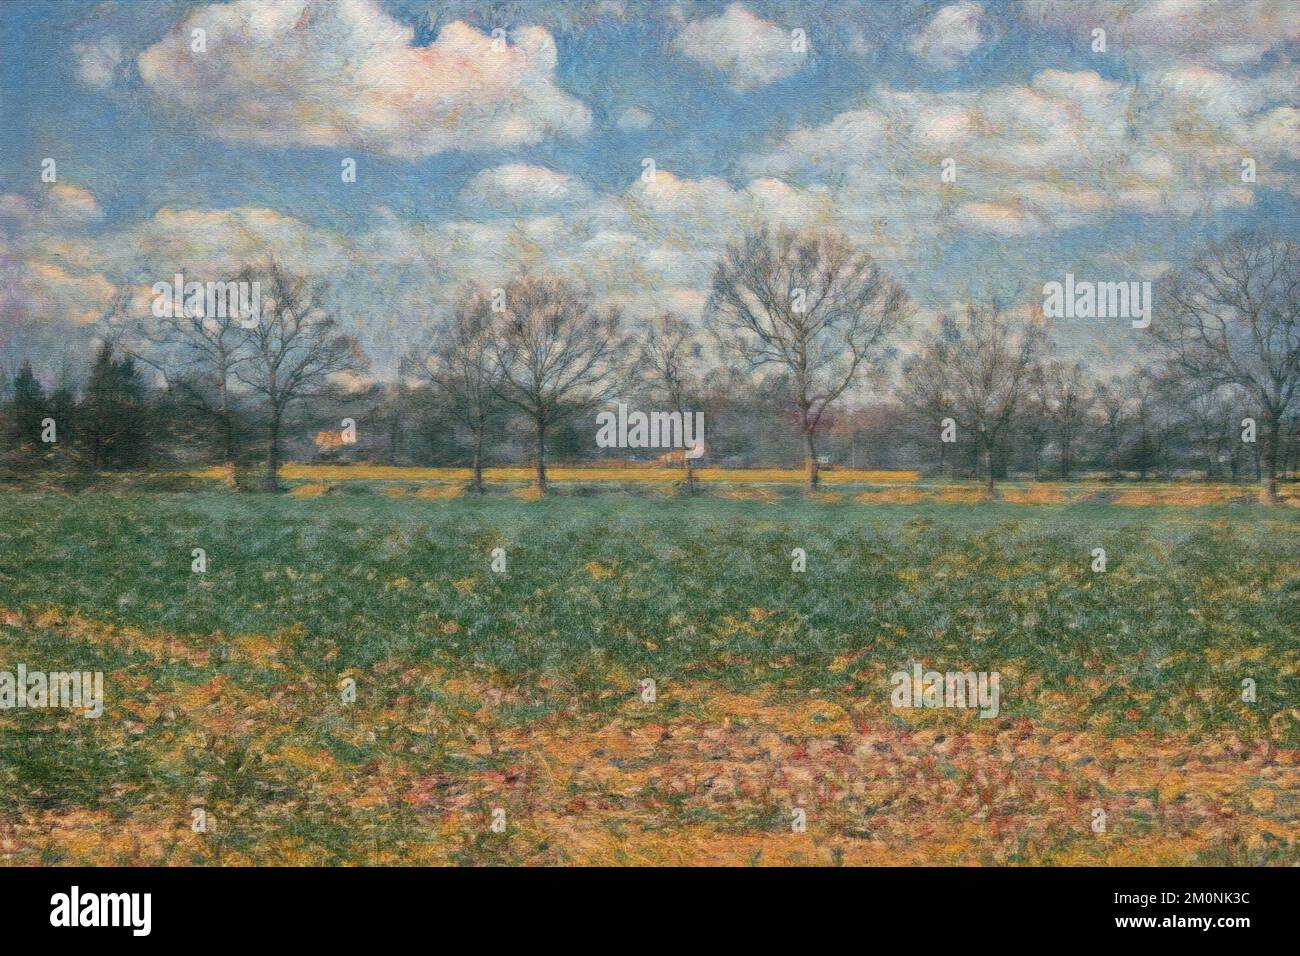 Pintura digital del paisaje del campo que muestra el campo agrícola y los árboles sin hojas bajo el cielo azul nublado, estilo del impresionismo Foto de stock